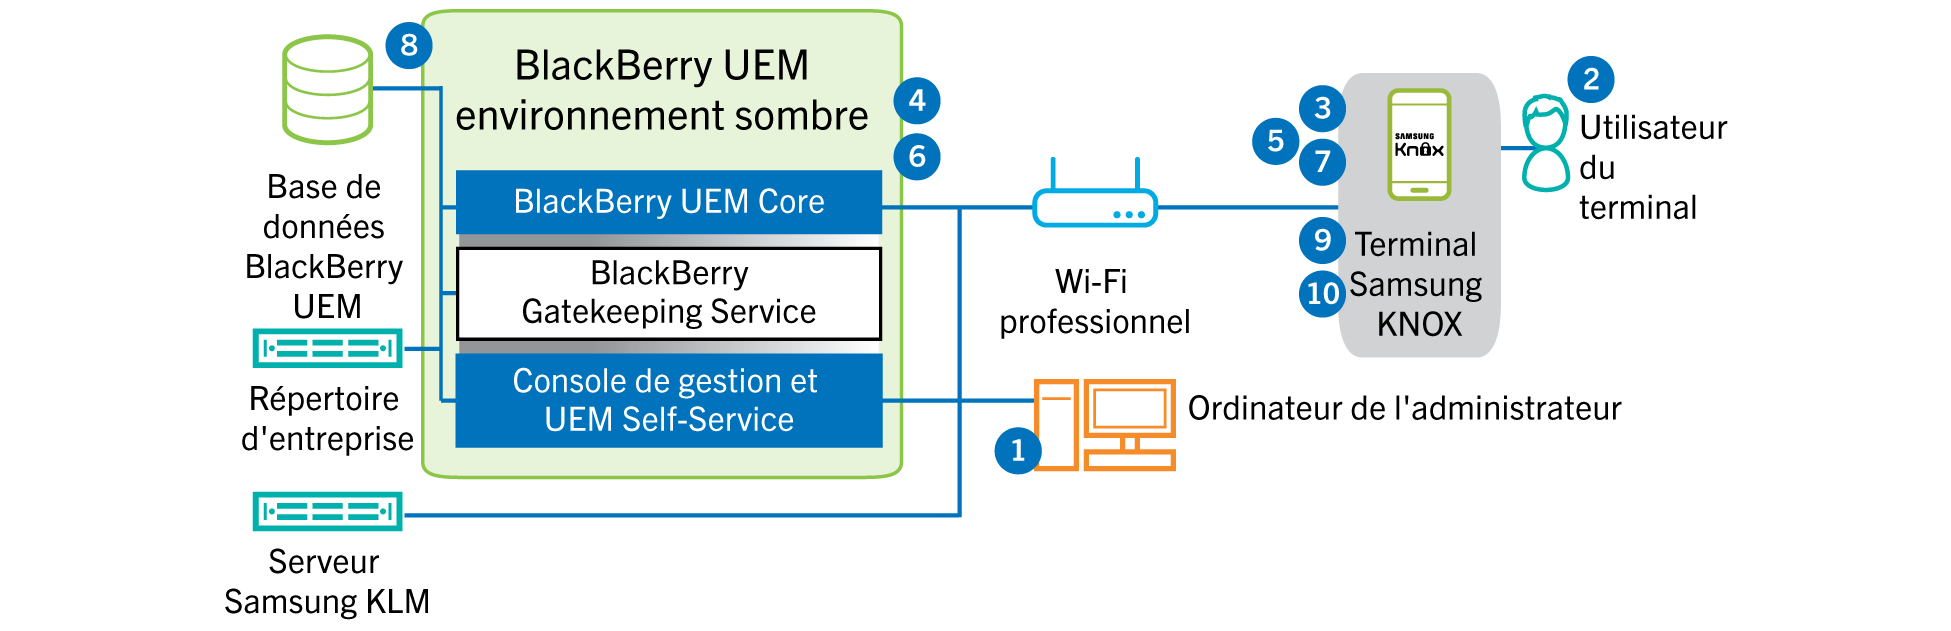 Schéma illustrant les étapes suivies et les composants BlackBerry UEM utilisés lors de l'activation d'un terminal Samsung Knox Workspace dans un environnement de site sombre.